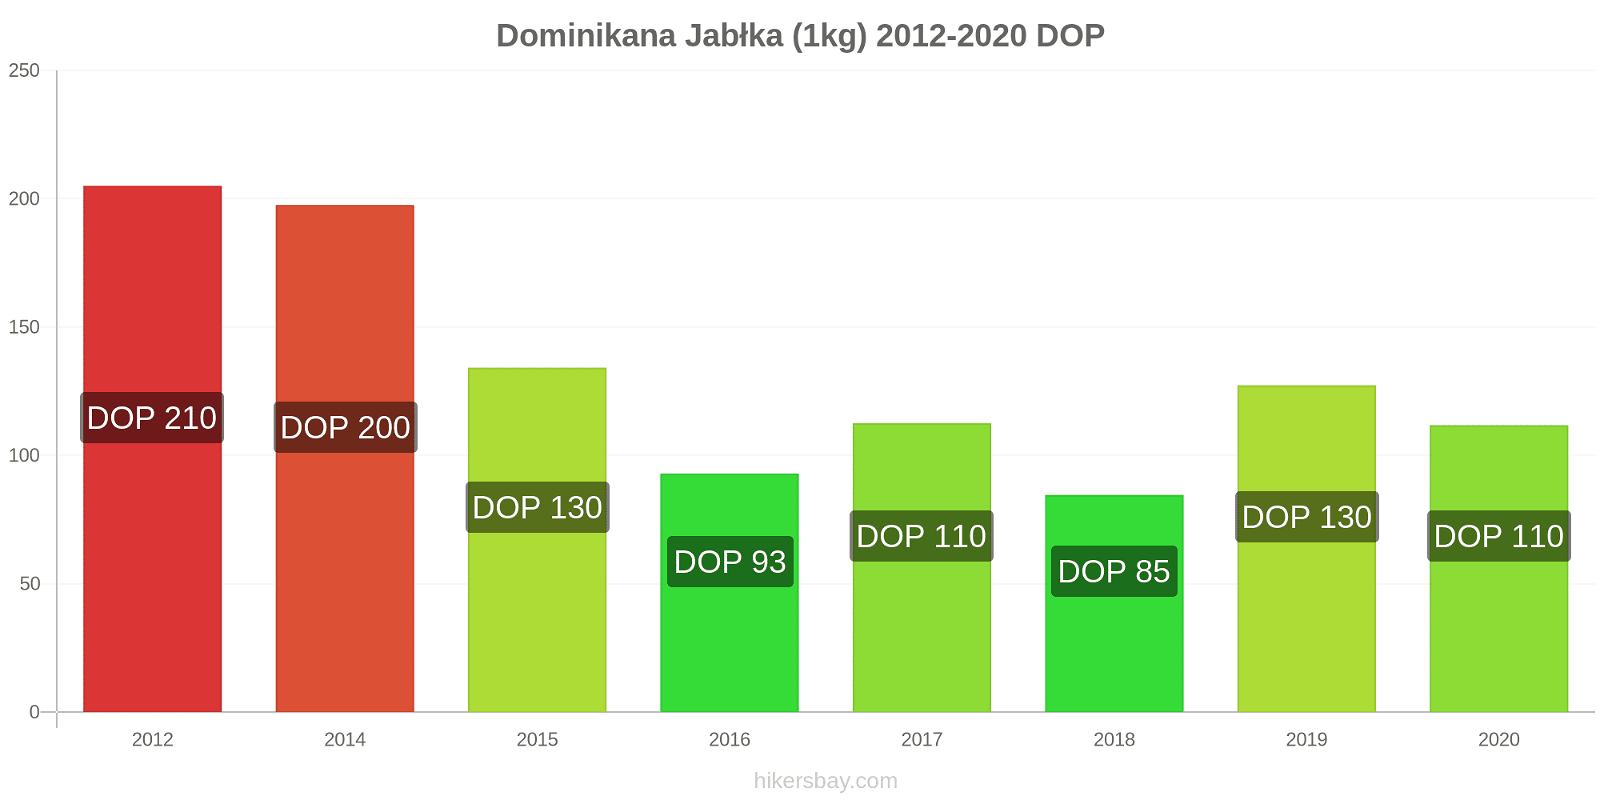 Dominikana zmiany cen Jabłka (1kg) hikersbay.com